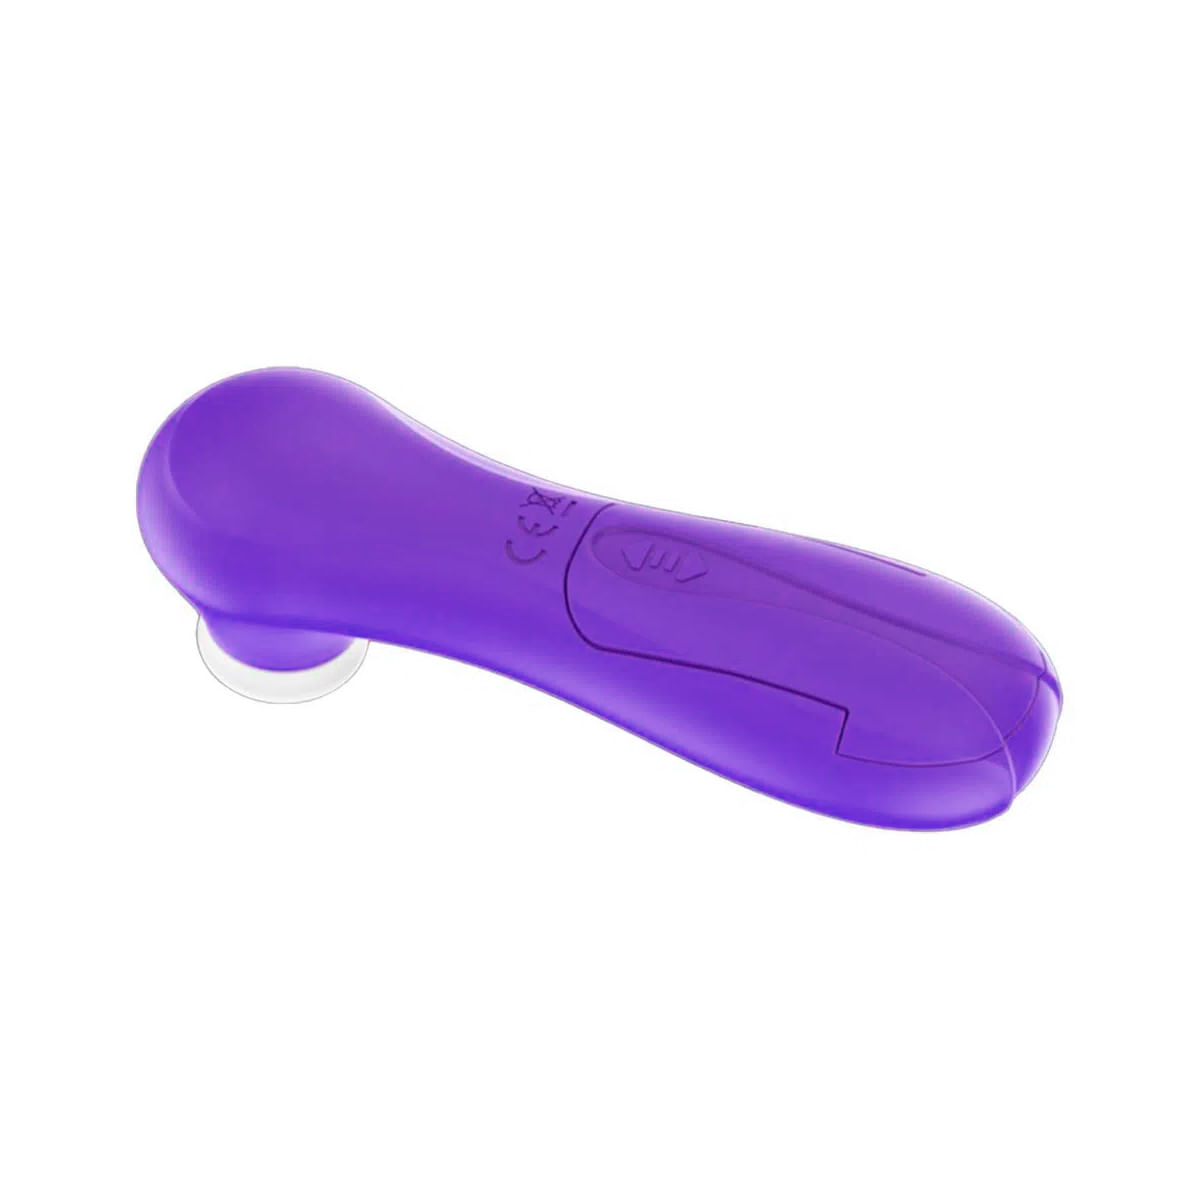 Estimulador Feminino com Sucção Sucking Massage Vip Mix